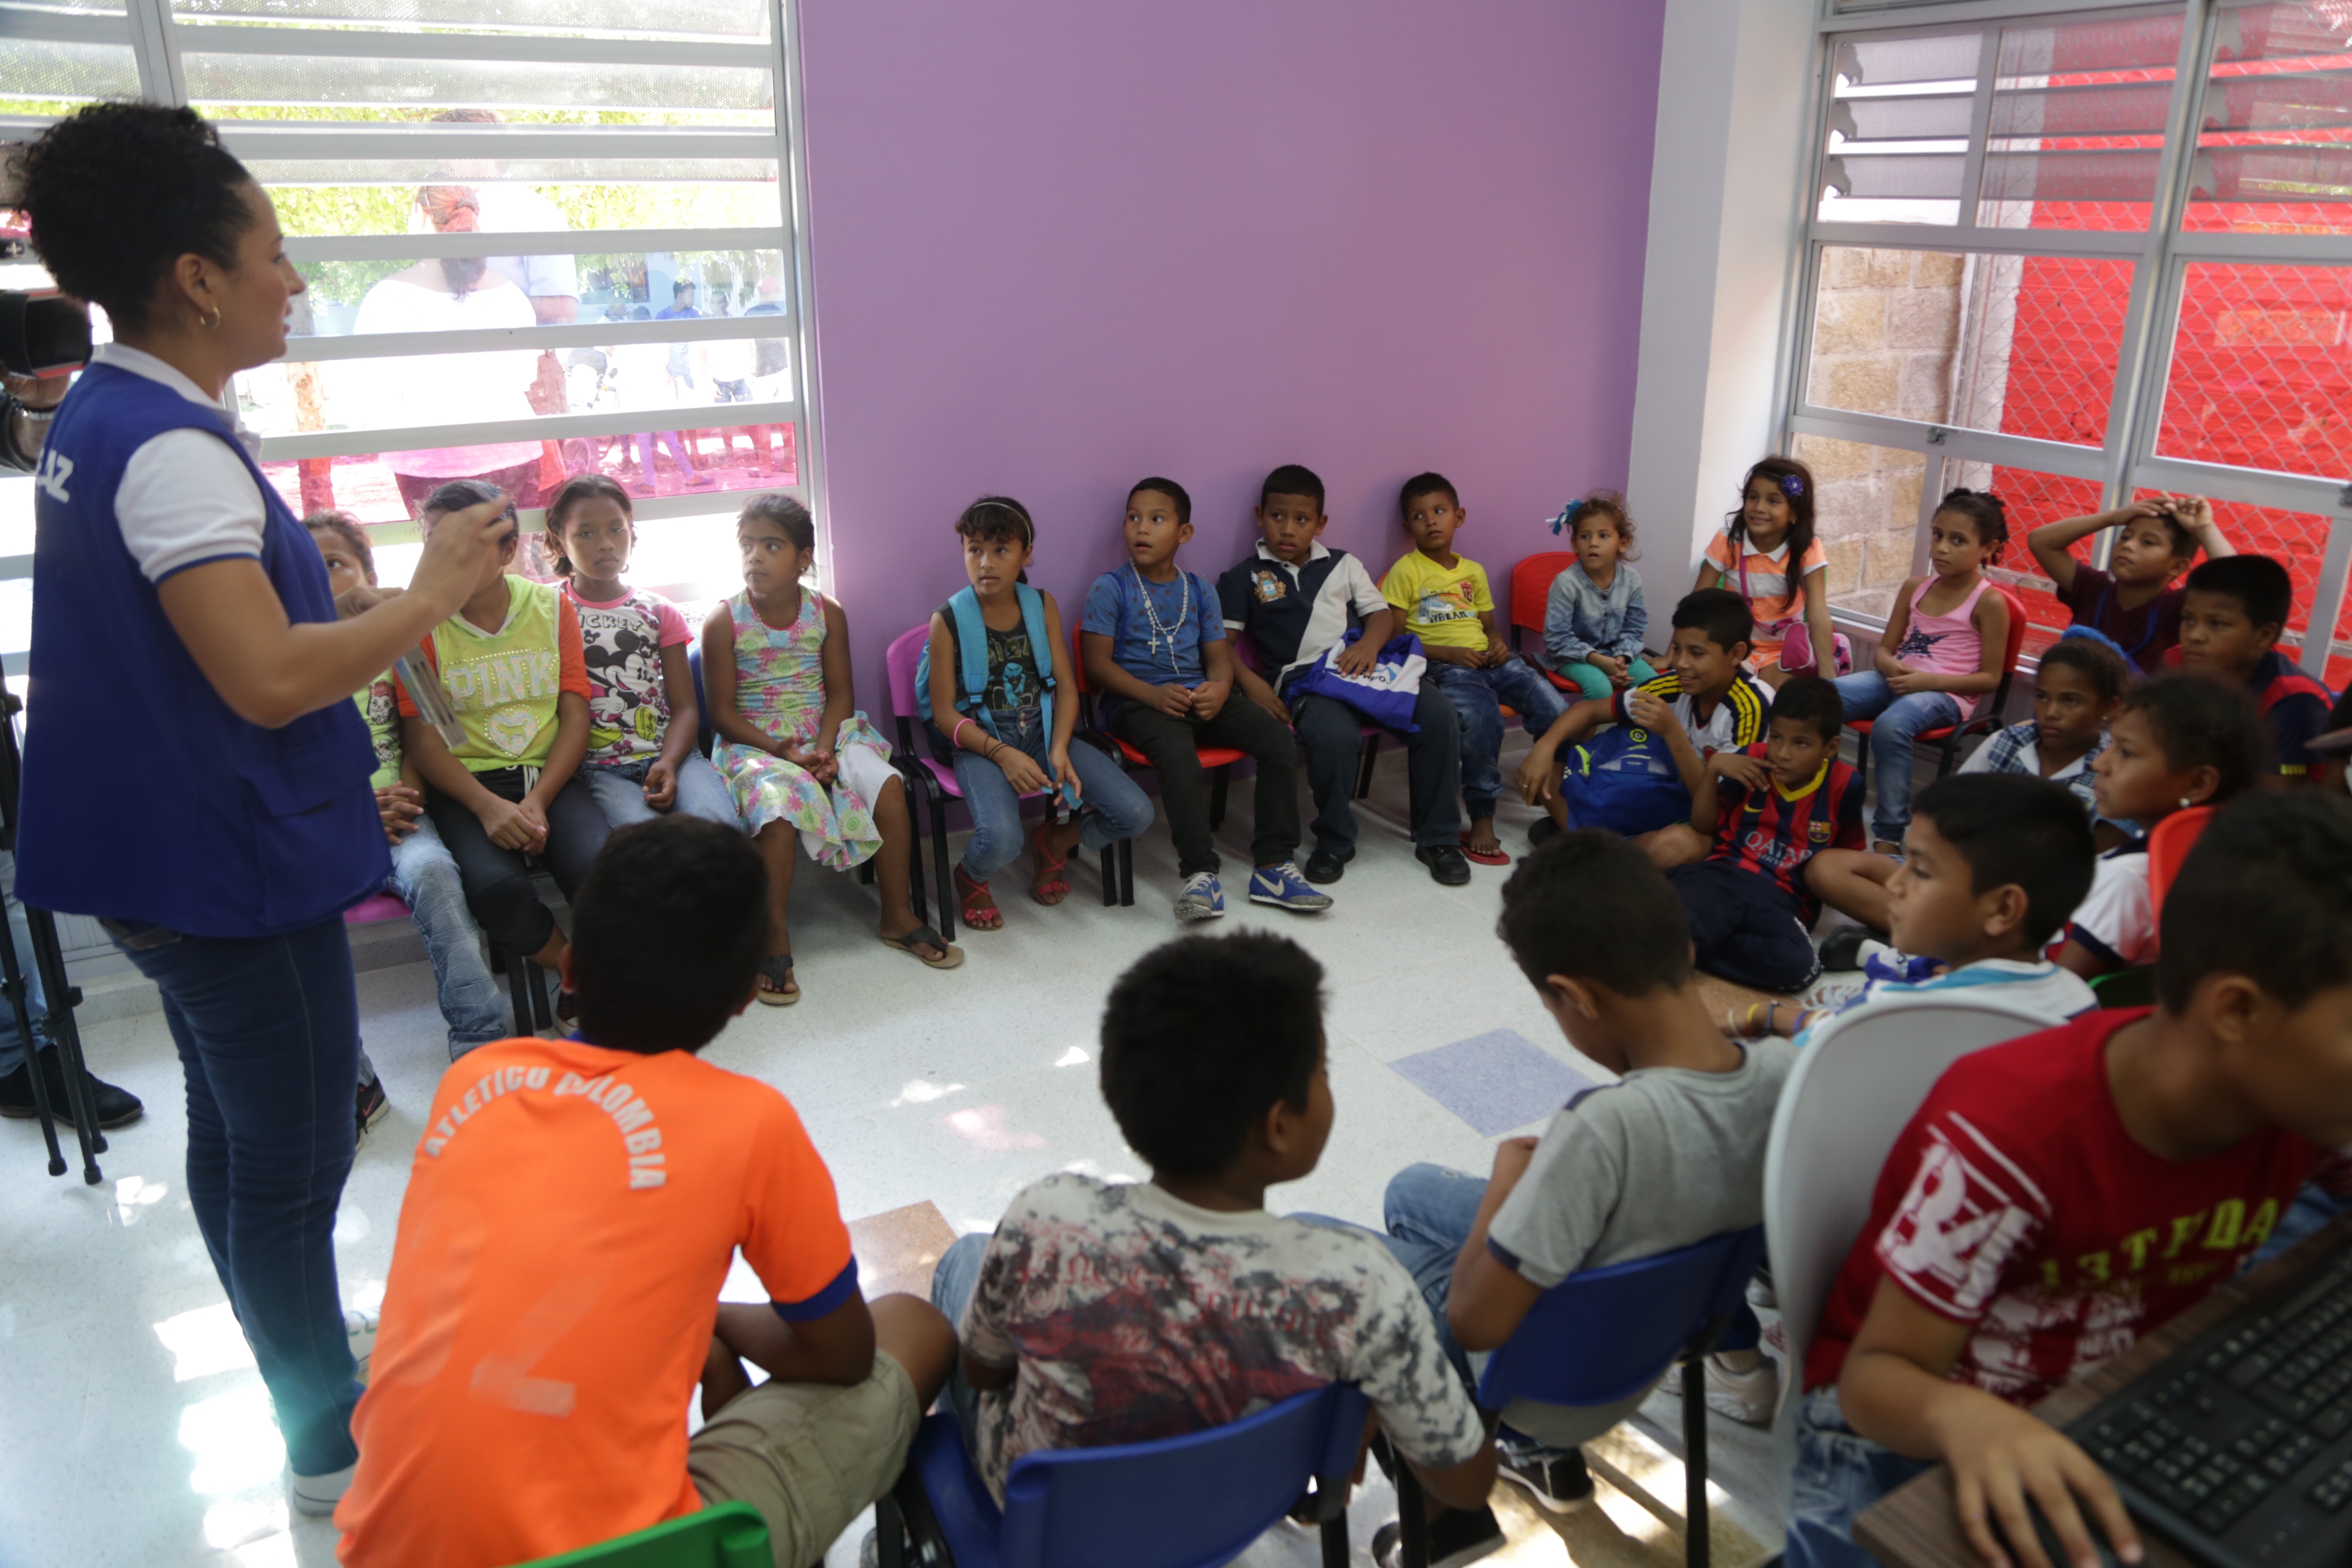 En Barranquilla, más de 400 niños se verán beneficiados con la recién inaugurada casa lúdica construida en el barrio La Paz